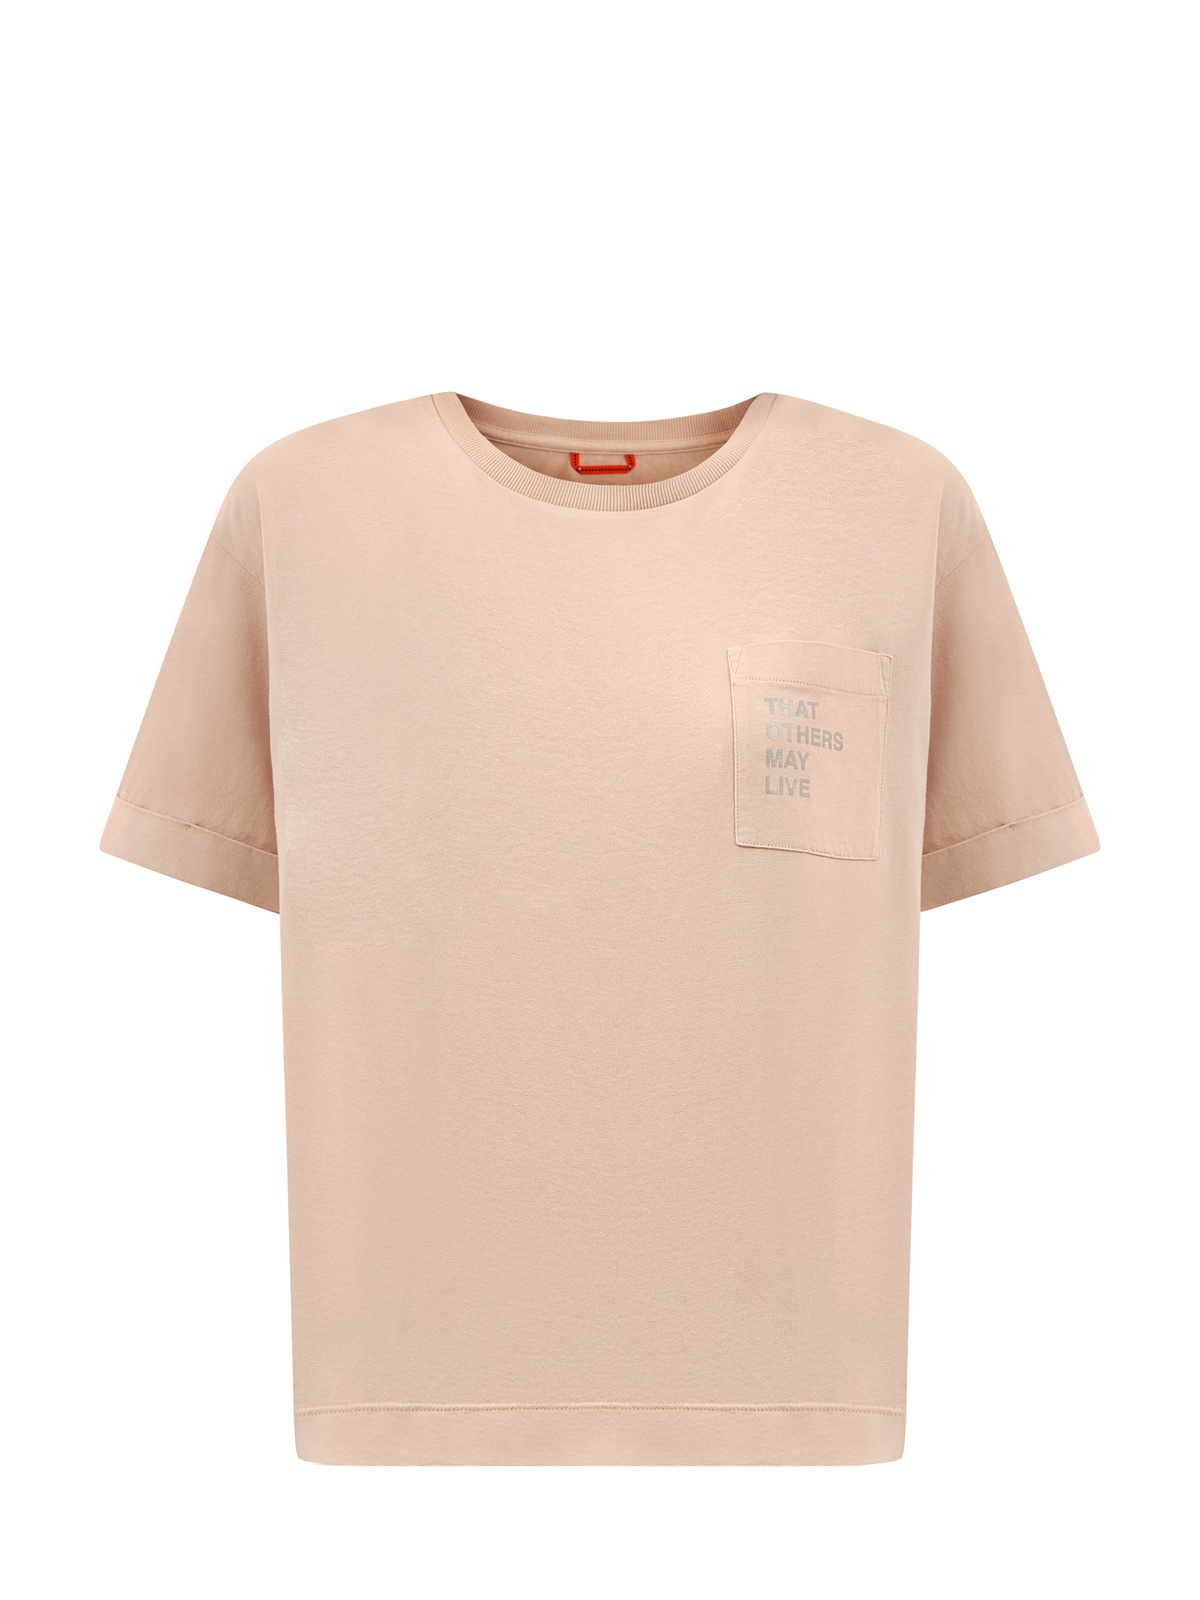 Свободная футболка из окрашенного вручную джерси с принтом PARAJUMPERS, цвет бежевый, размер XS;S;M;L